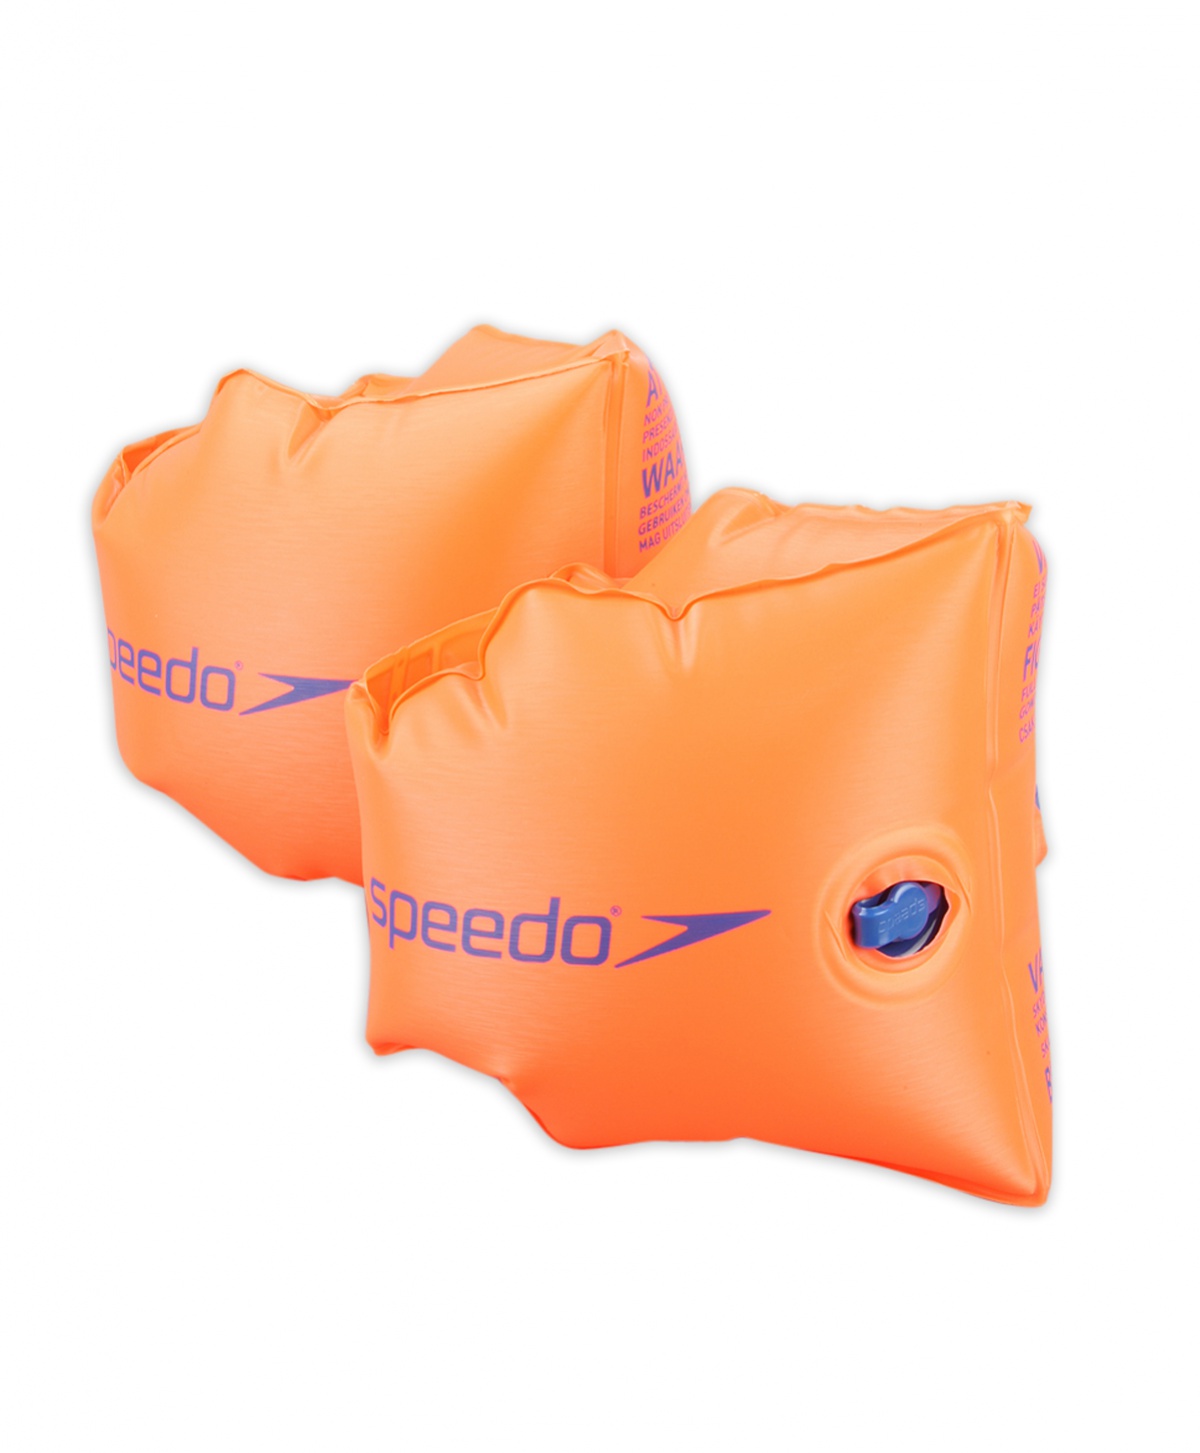 Dětské rukávky Speedo Armbands Orange 6-12 + prodejny Praha, Brno, Plzeň a Ostrava výměna a vrácení do 30 dnů s poštovným zdarma